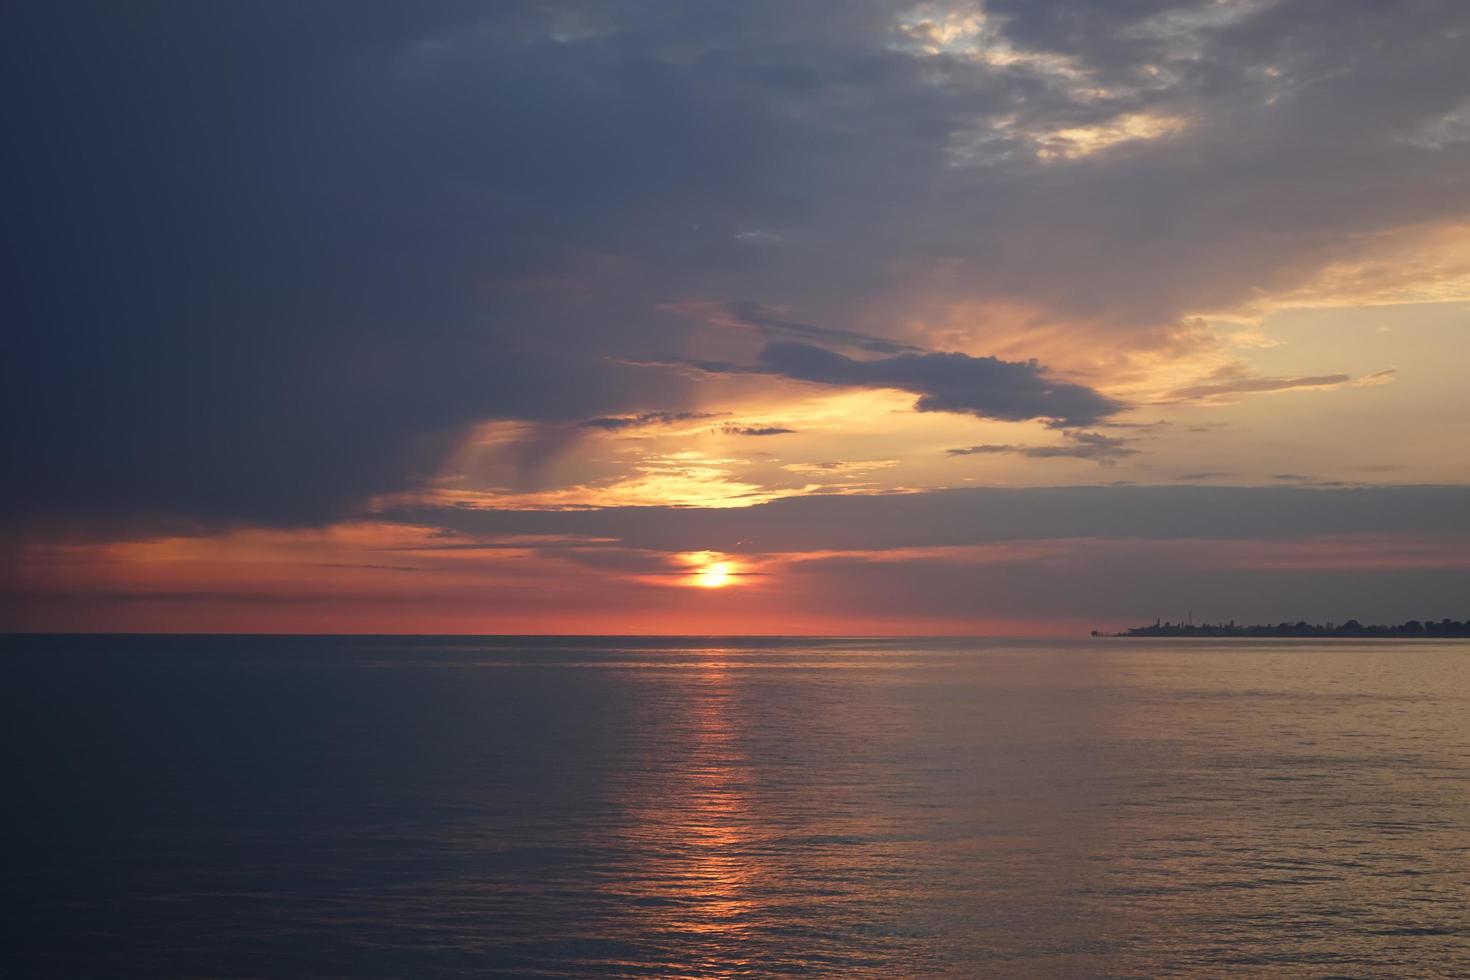 incrível pôr do sol no oceano. vista dramática do céu nublado foto